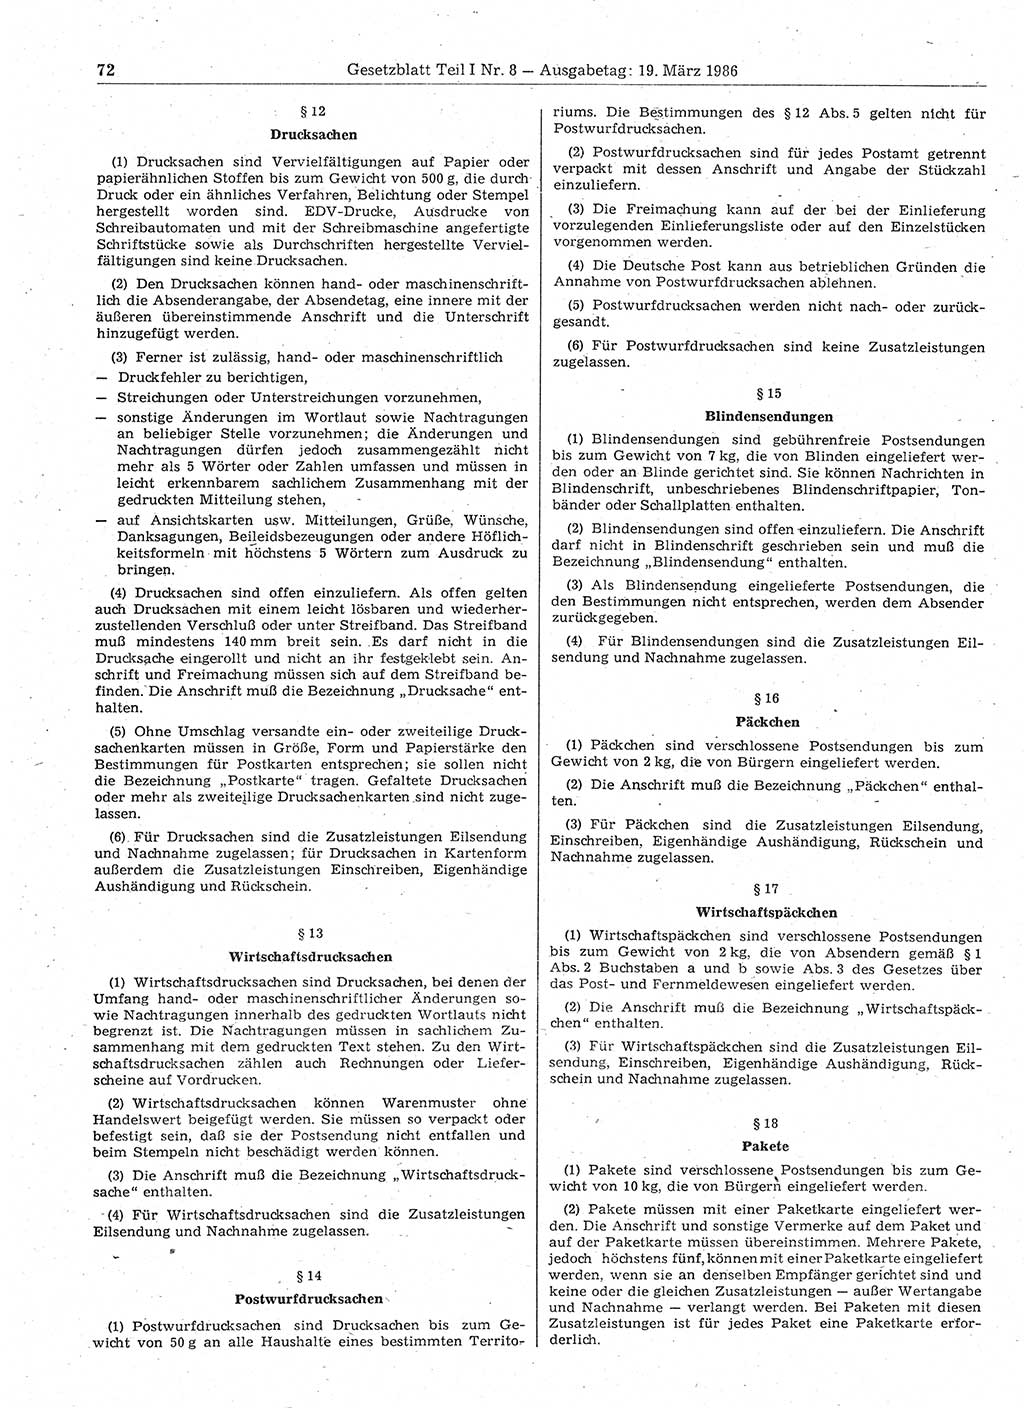 Gesetzblatt (GBl.) der Deutschen Demokratischen Republik (DDR) Teil Ⅰ 1986, Seite 72 (GBl. DDR Ⅰ 1986, S. 72)